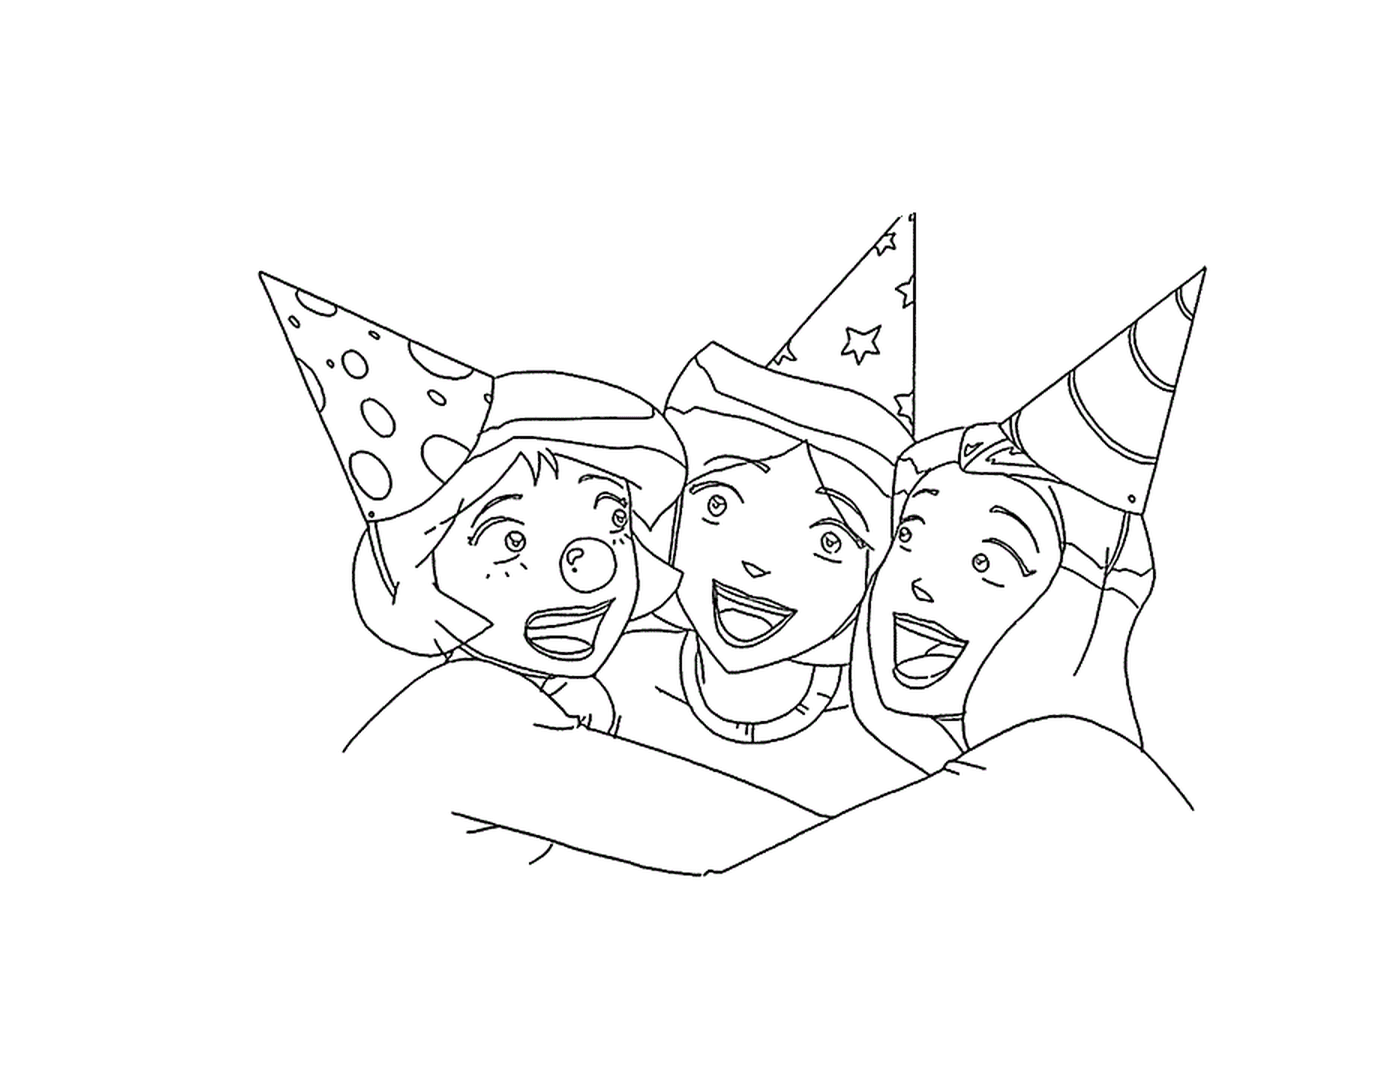  Gruppo di tre persone con cappelli da festa 